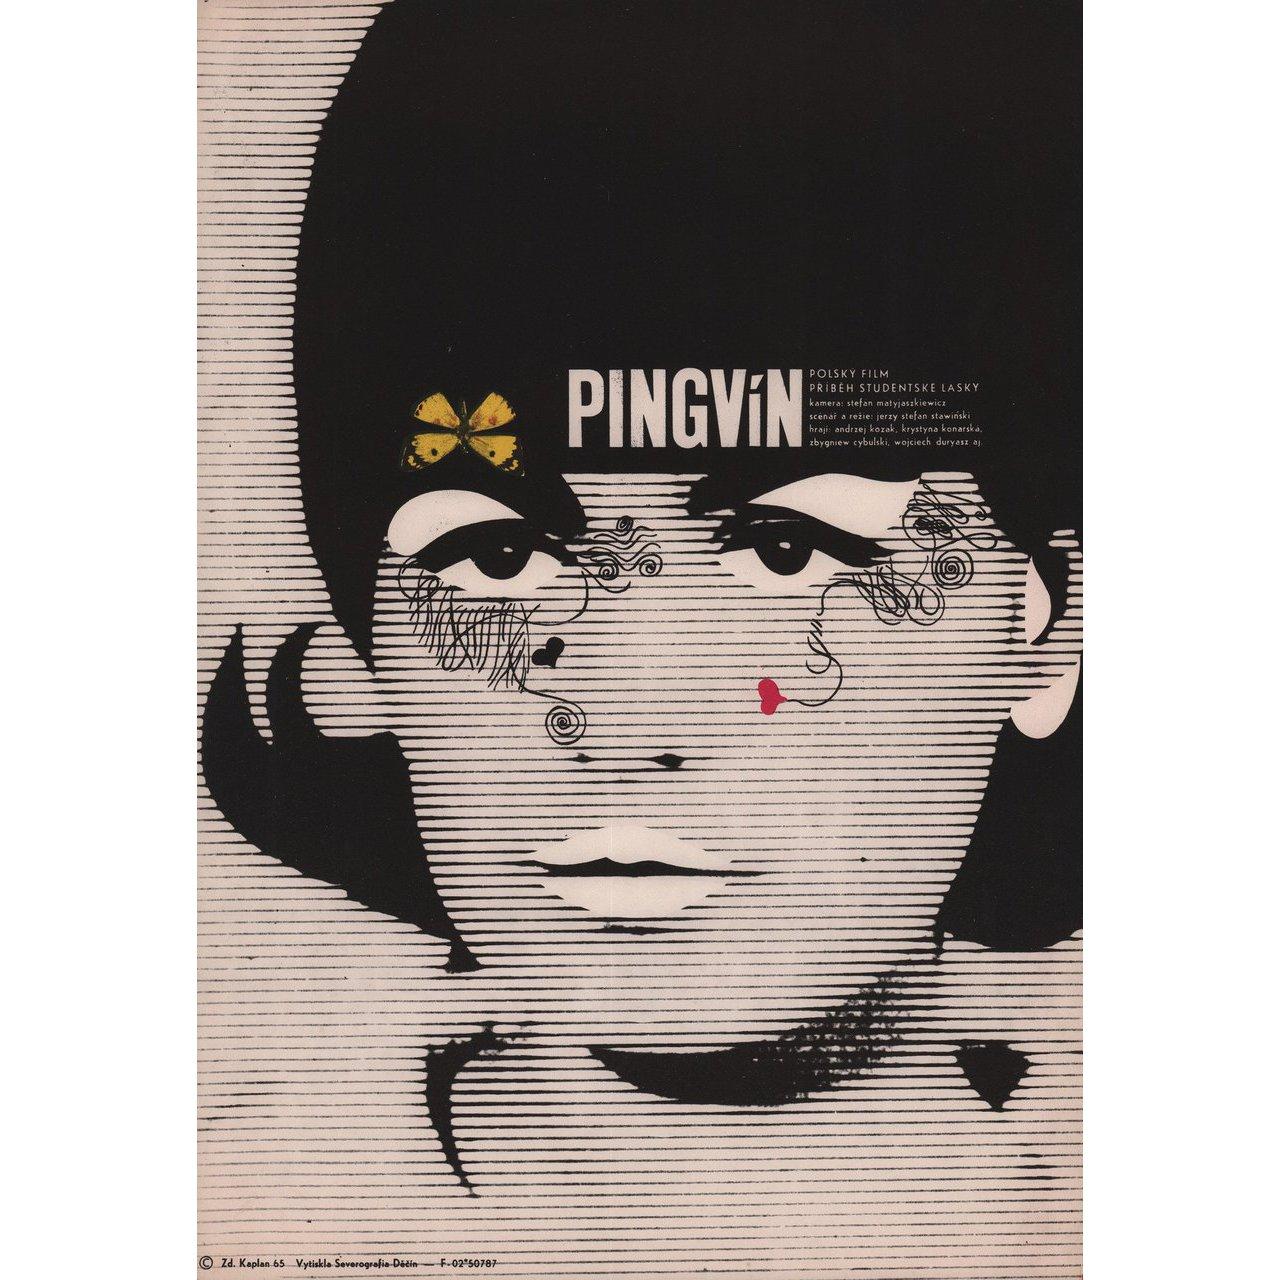 Original 1965 Czech A3 poster by Zdenek Kaplan for the film Pingwin (Penguin) directed by Jerzy Stefan Stawinski with Andrzej Kozak / Krystyna Konarska / Zbigniew Cybulski / Janina Kaluska-Szydlowska. Fine condition, folded. Many original posters